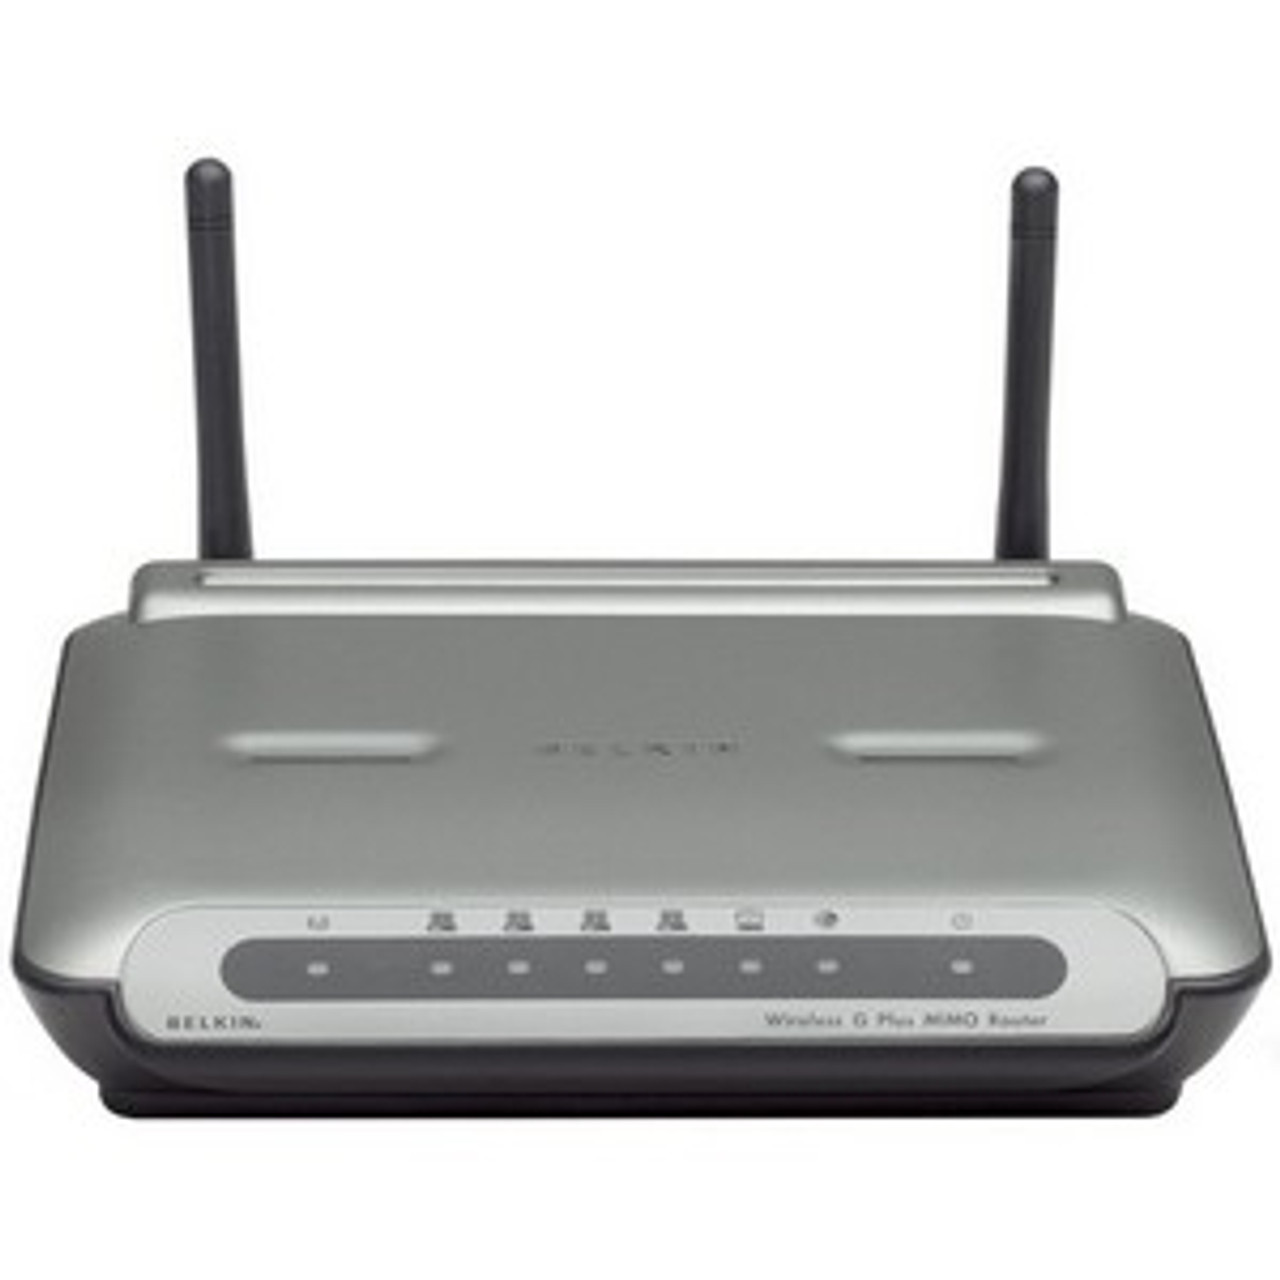 F5D9230TT4 Belkin Wireless G+ MIMO Router (Refurbished)